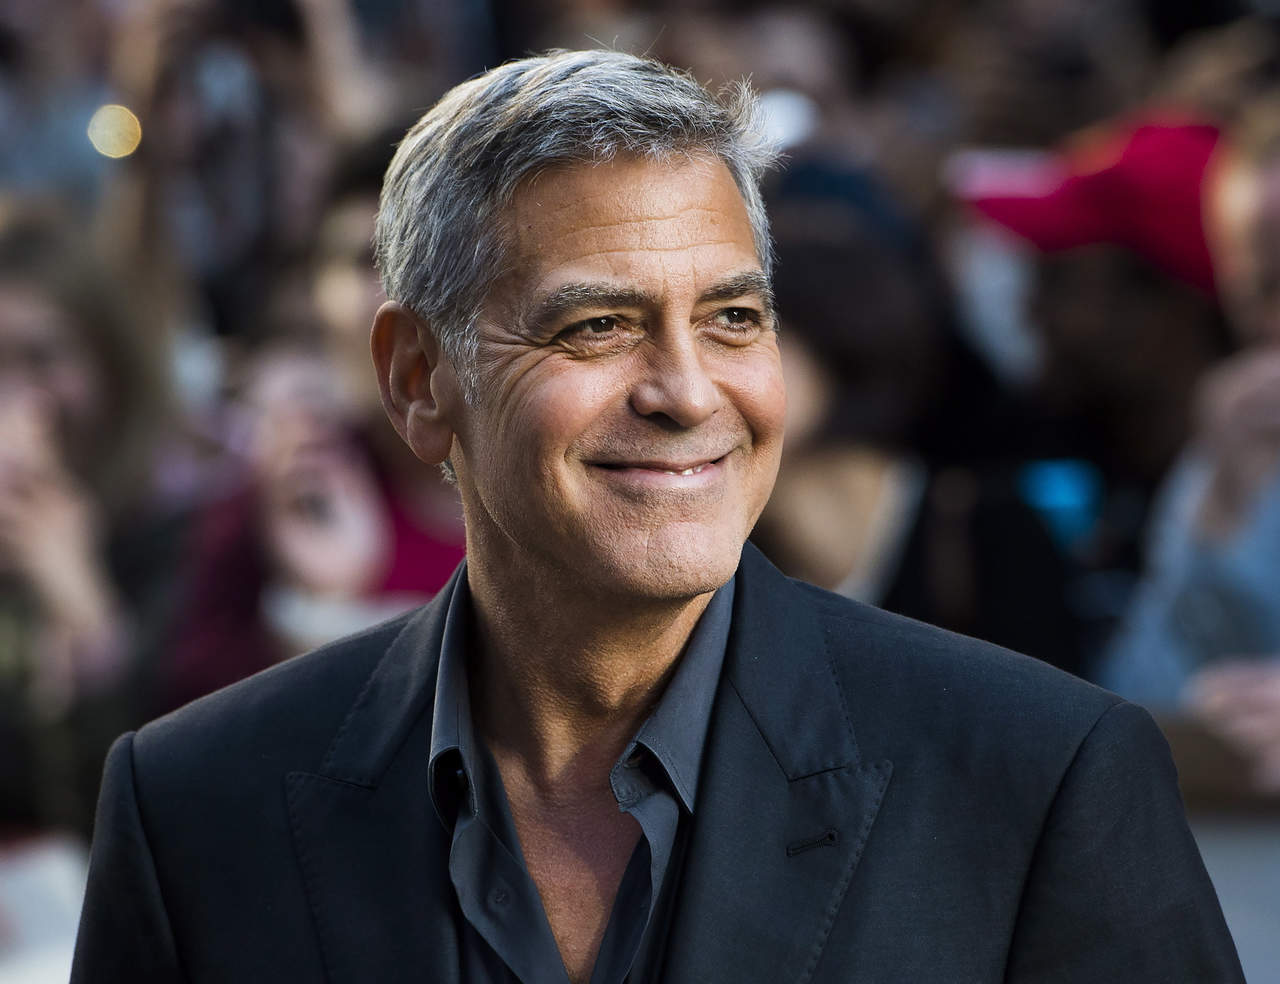 Según informó hoy el medio especializado Variety, Clooney figurará como productor ejecutivo de esta serie limitada de ocho episodios que escribirá Matt Charman, uno de los responsables del guion de la película de Steven Spielberg 'Bridge of Spies' (2015). (ARCHIVO)